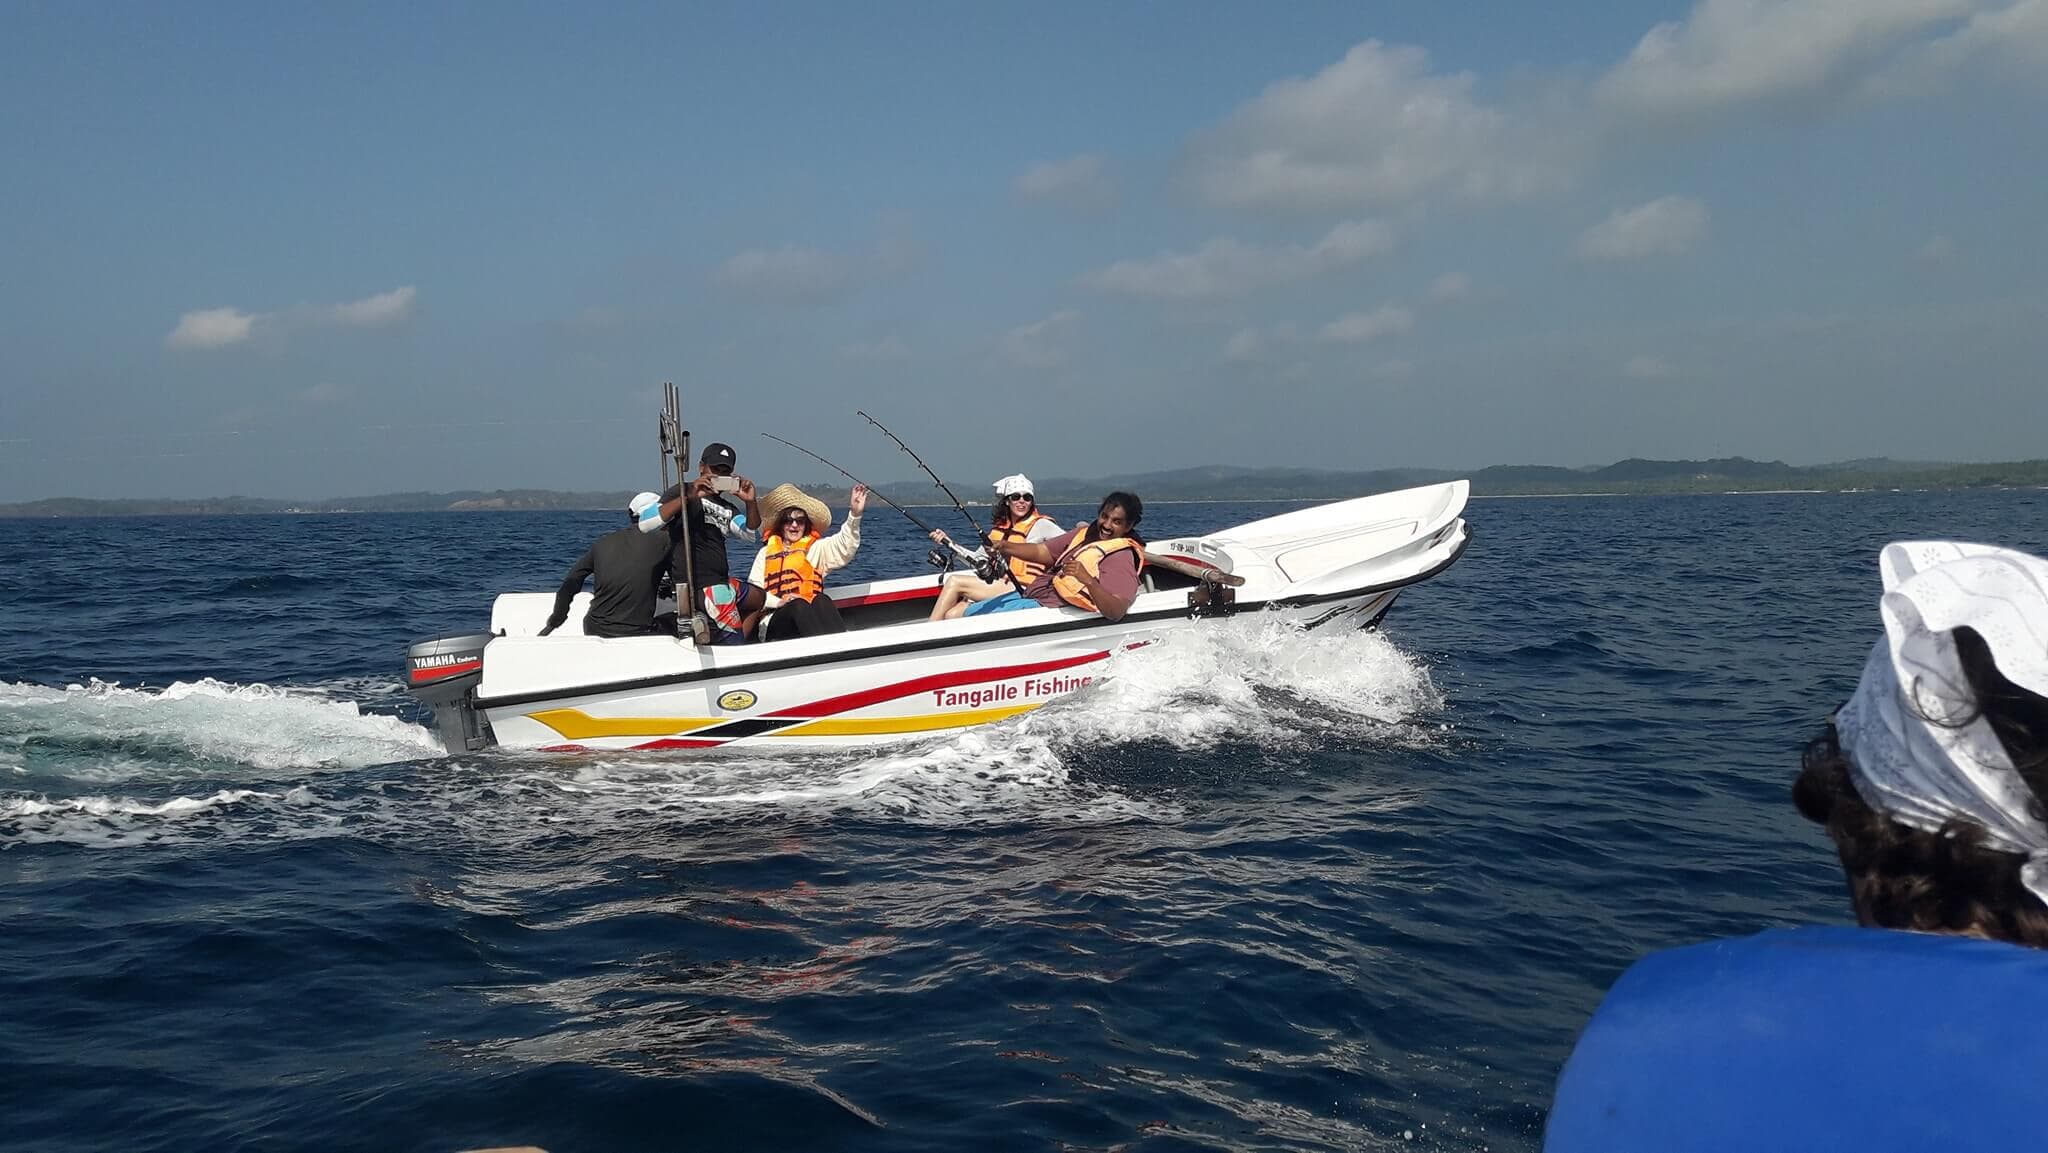 Туристы путешествуют на рыбацкой лодке, чтобы ловить рыбу в море Тангалле